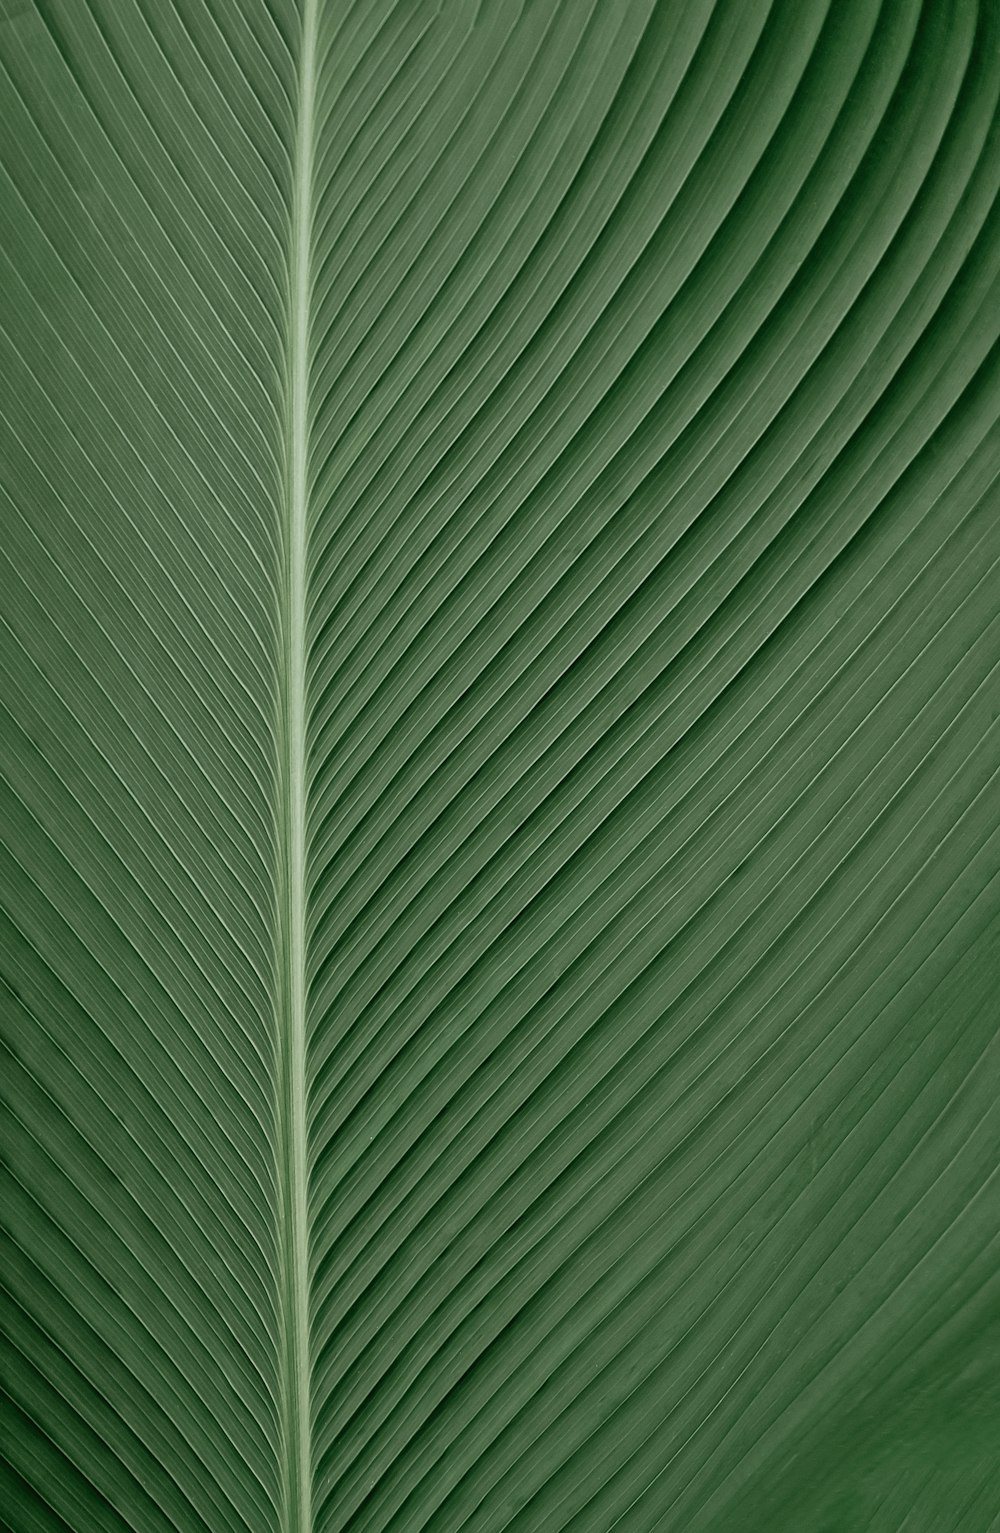 grün-weiß gestreiftes Textil